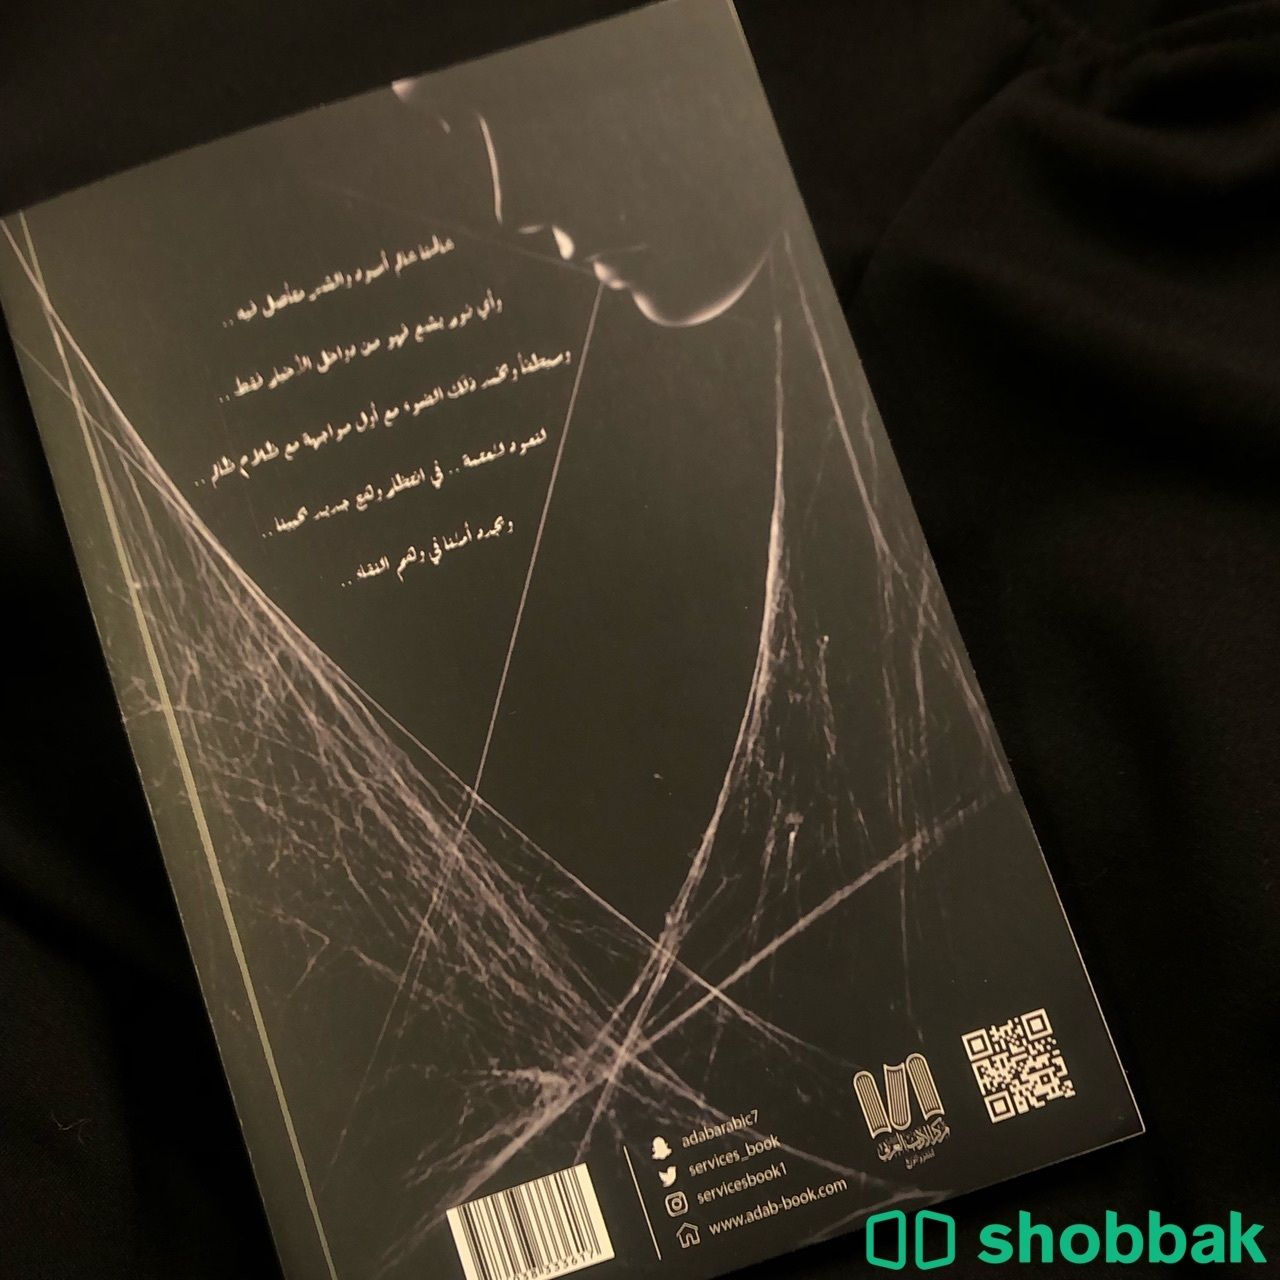 شبكة العنكبوت وقصص من وحي الواقع  Shobbak Saudi Arabia